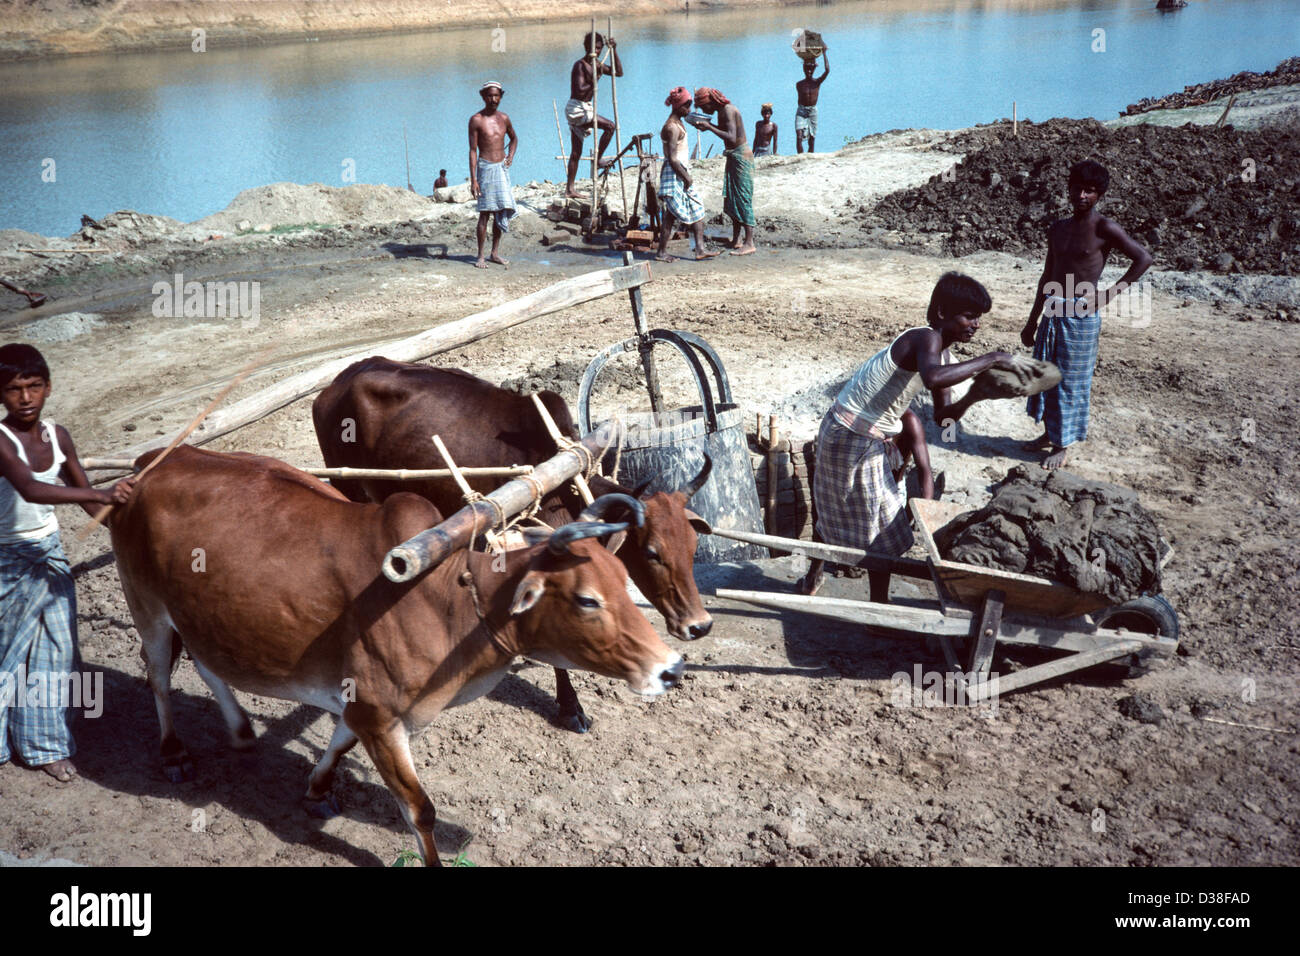 Les ouvriers qui exploitent un moulin à argile entraîné par le bétail près de la rivière, fournissent de l'argile aux briqueteries locales. Près de Jamalpur, Bangladesh Banque D'Images